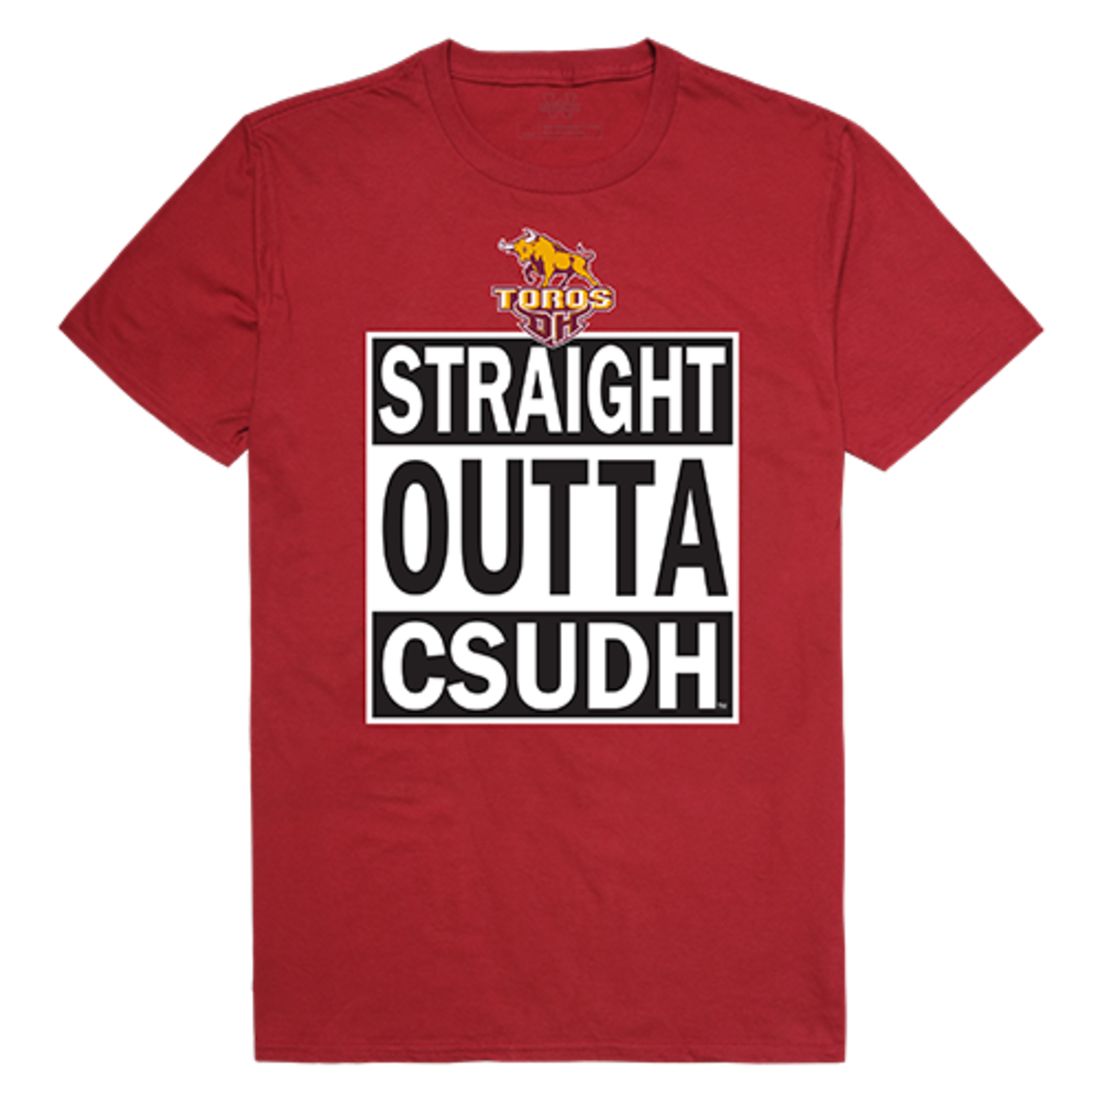 CSUDH California State University Dominguez Hills Toros Straight Outta T-Shirt